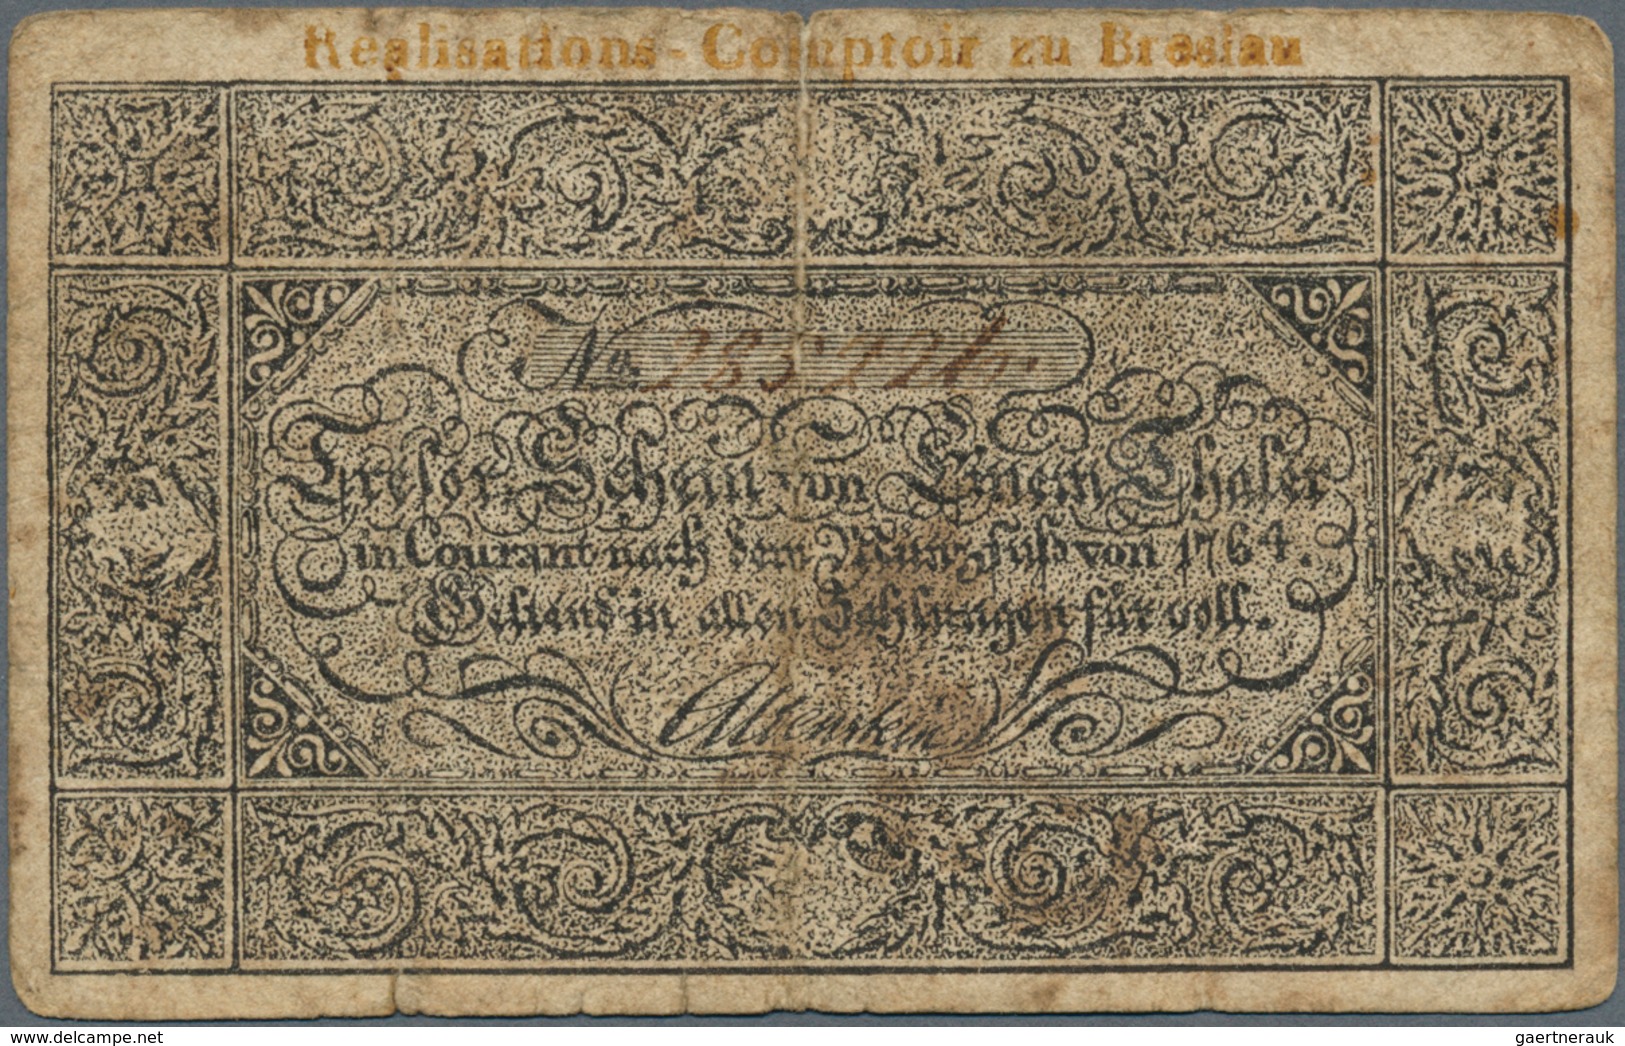 Deutschland - Altdeutsche Staaten: Königreich Preußen 1 Taler 1809, Comptoir Zu Breslau PR A207 / Pi - [ 1] …-1871 : Stati Tedeschi